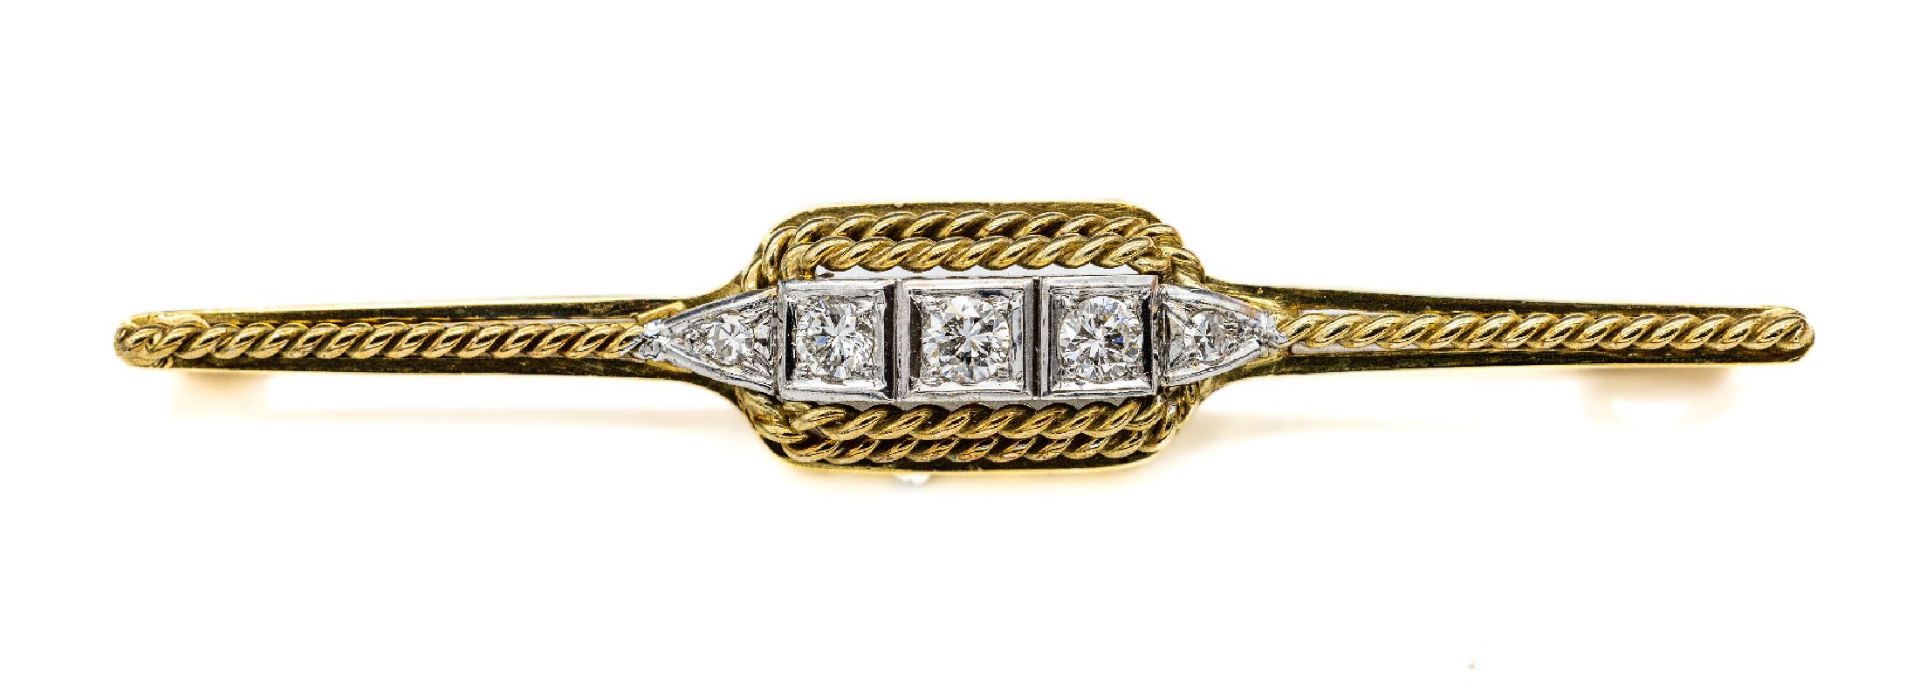 14 kt Gold Diamant-Brosche,   1960er Jahre, GG/WG 585/000,